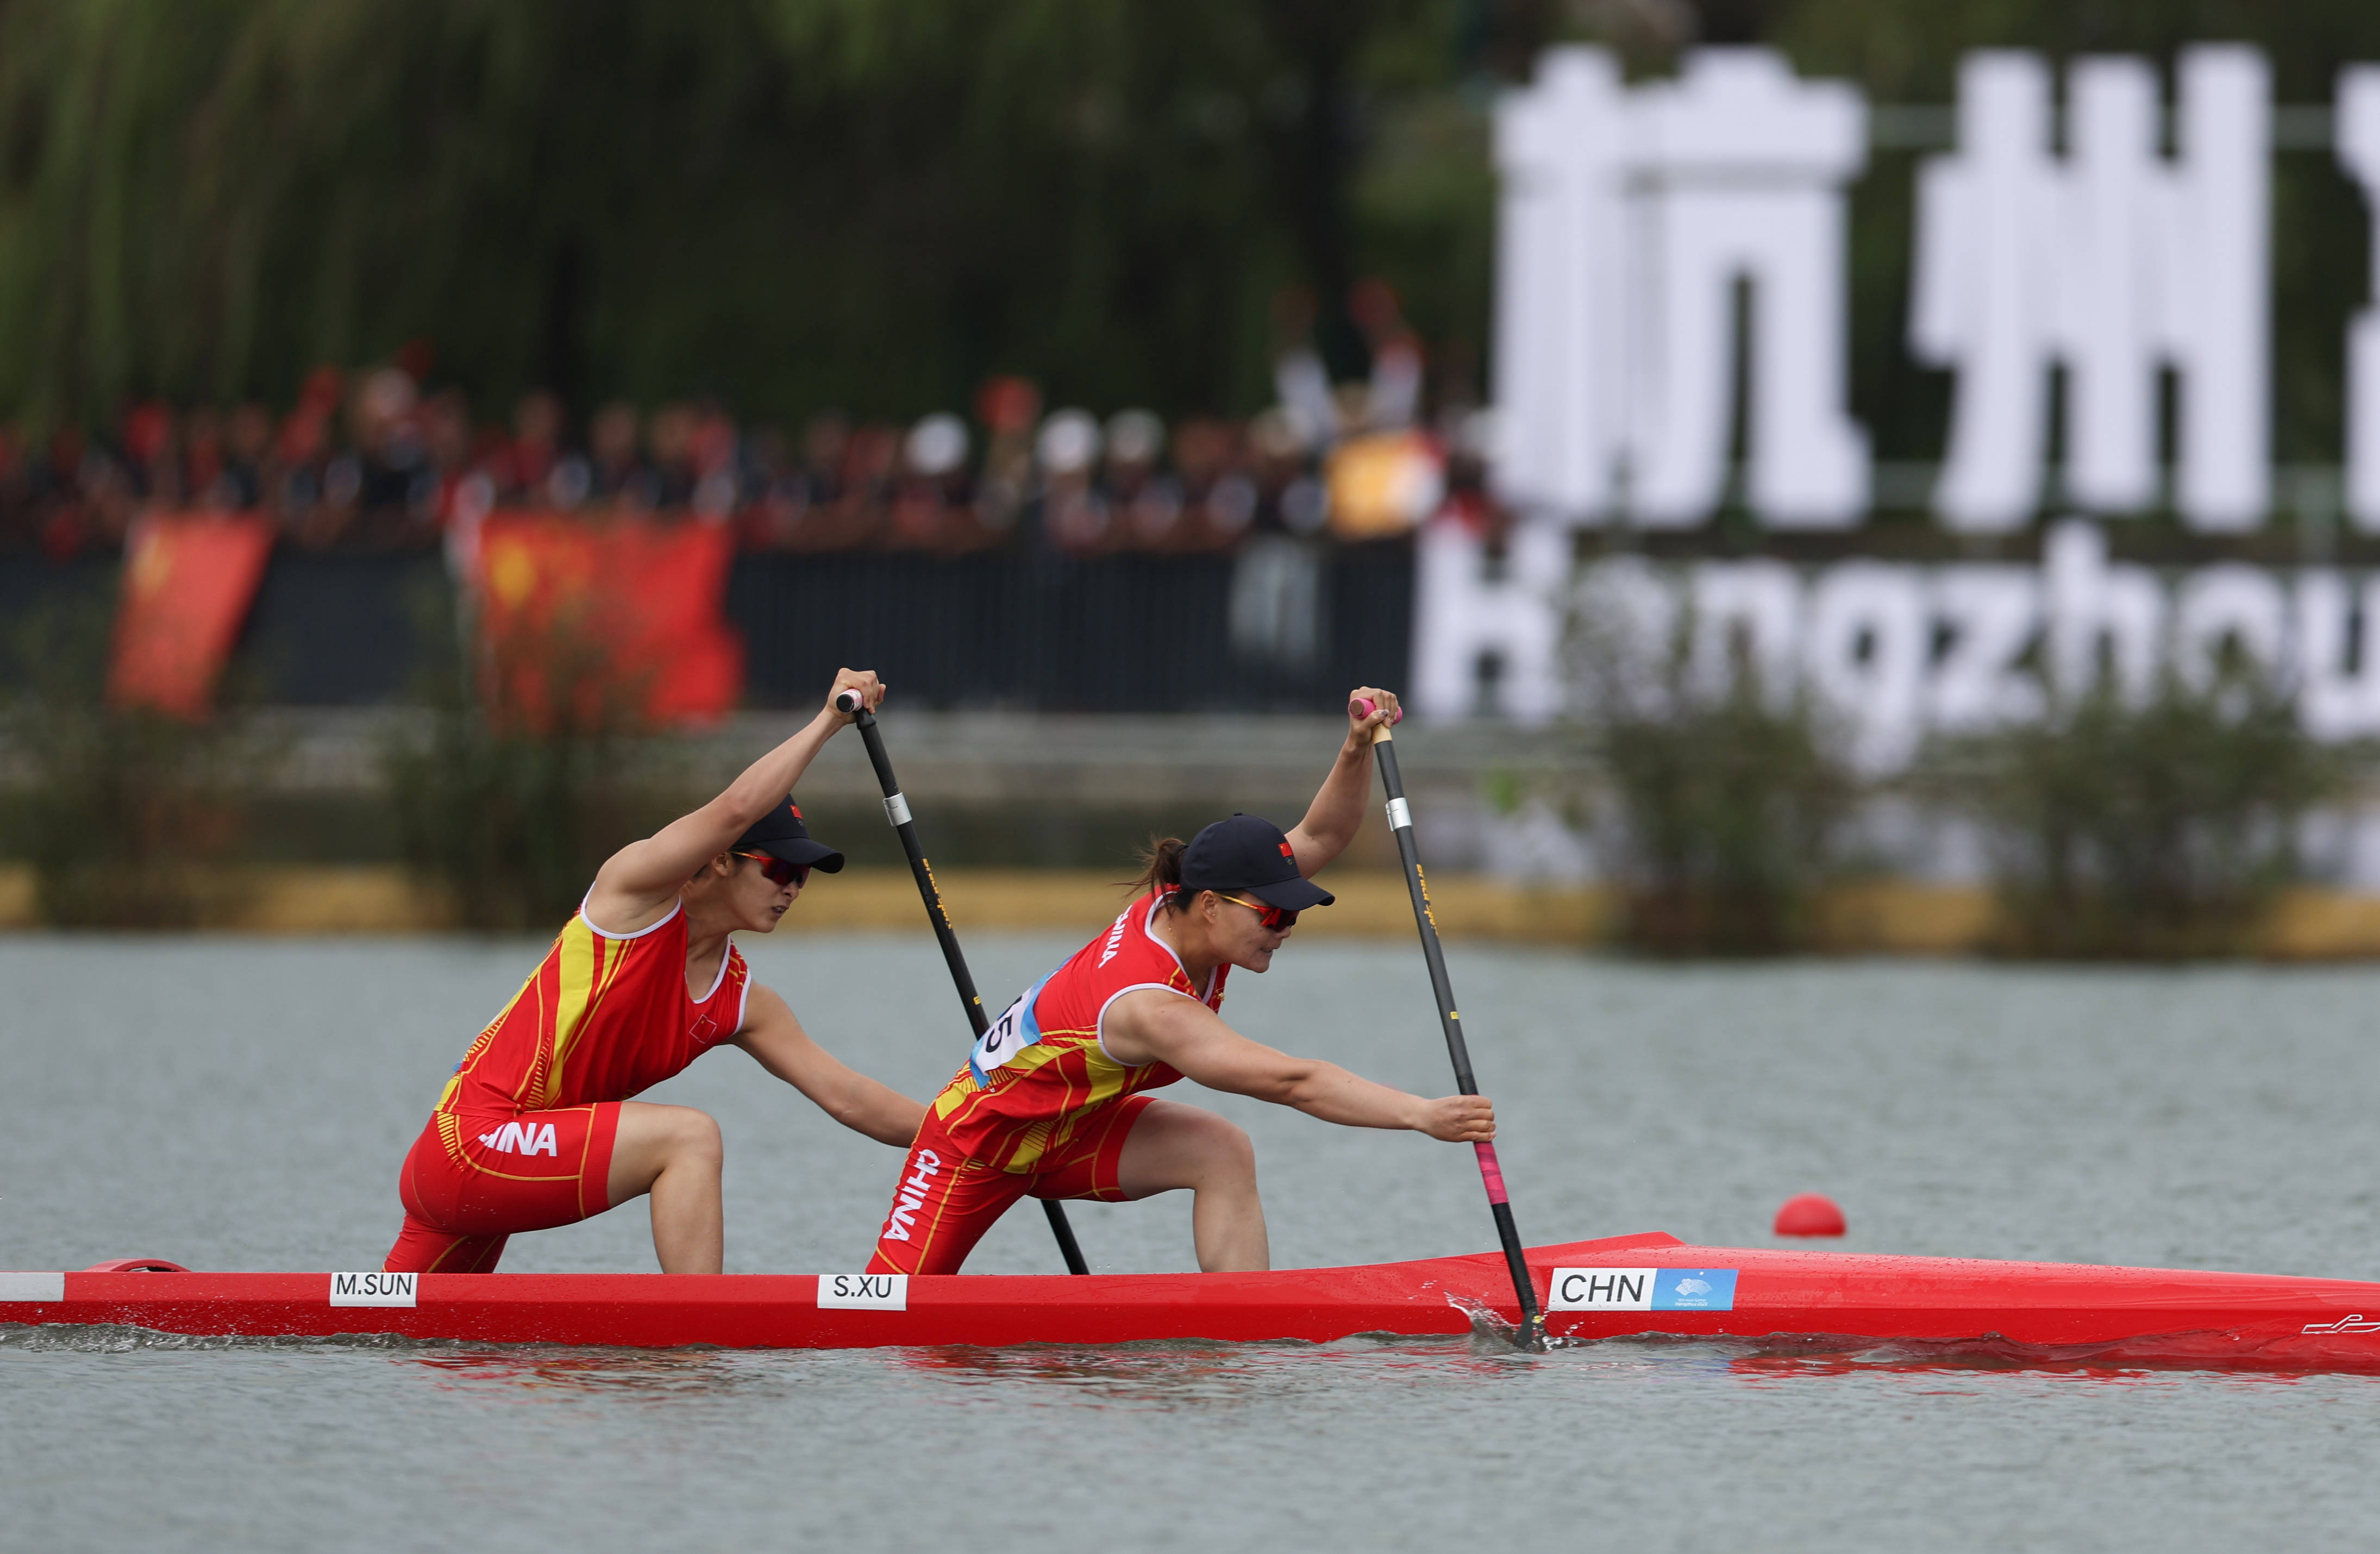 随后,东京奥运会冠军组合孙梦雅/徐诗晓在女子500米双人划艇比赛中,为